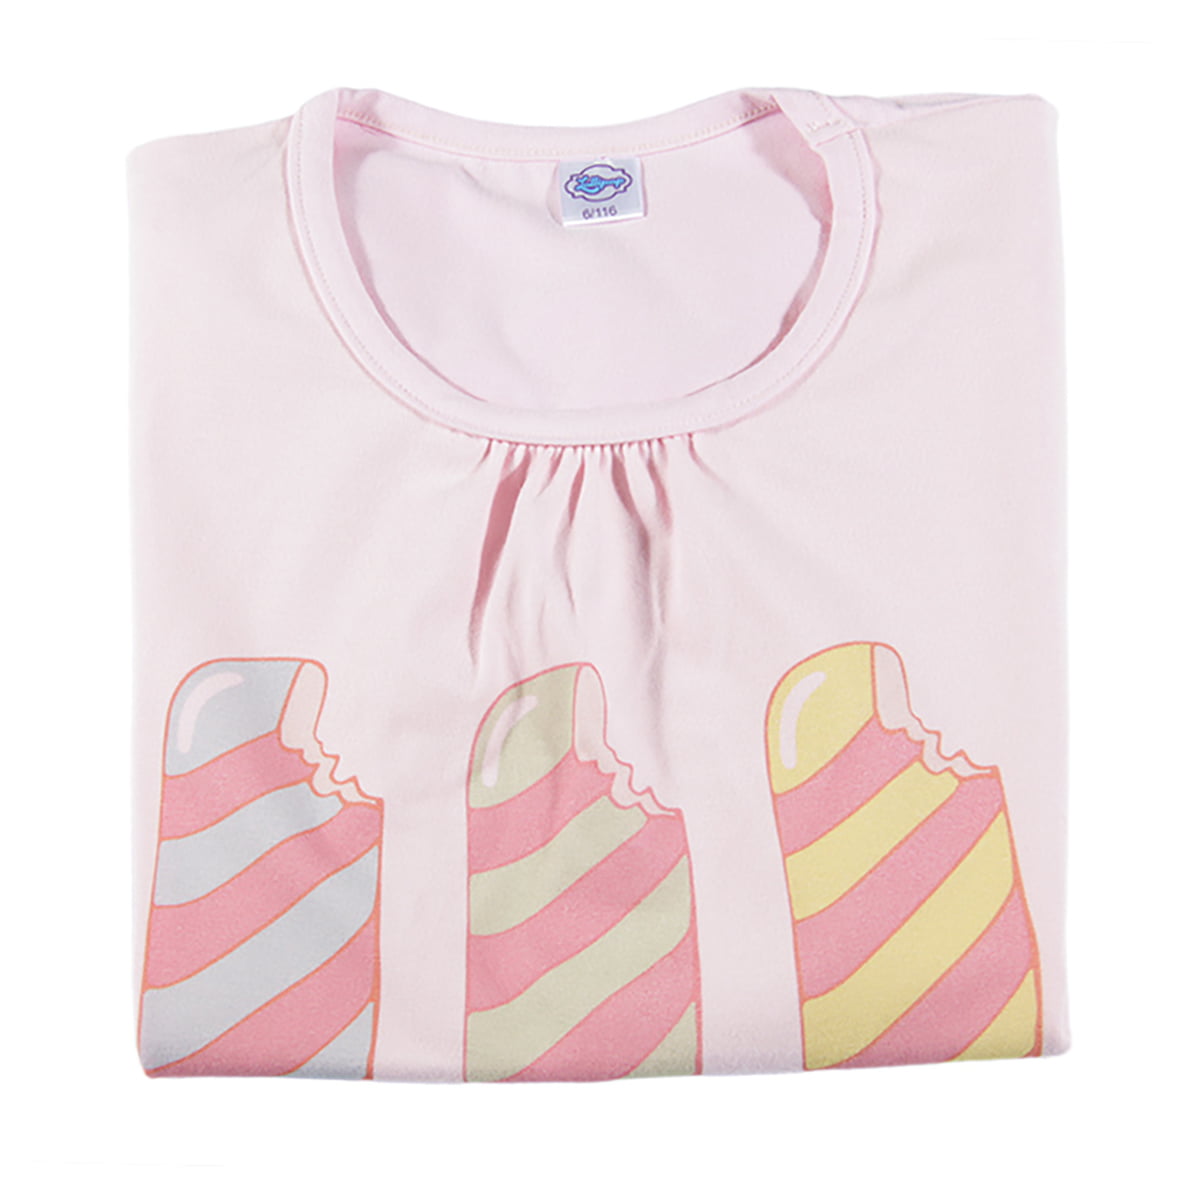 print tri sladača na rozoj majici